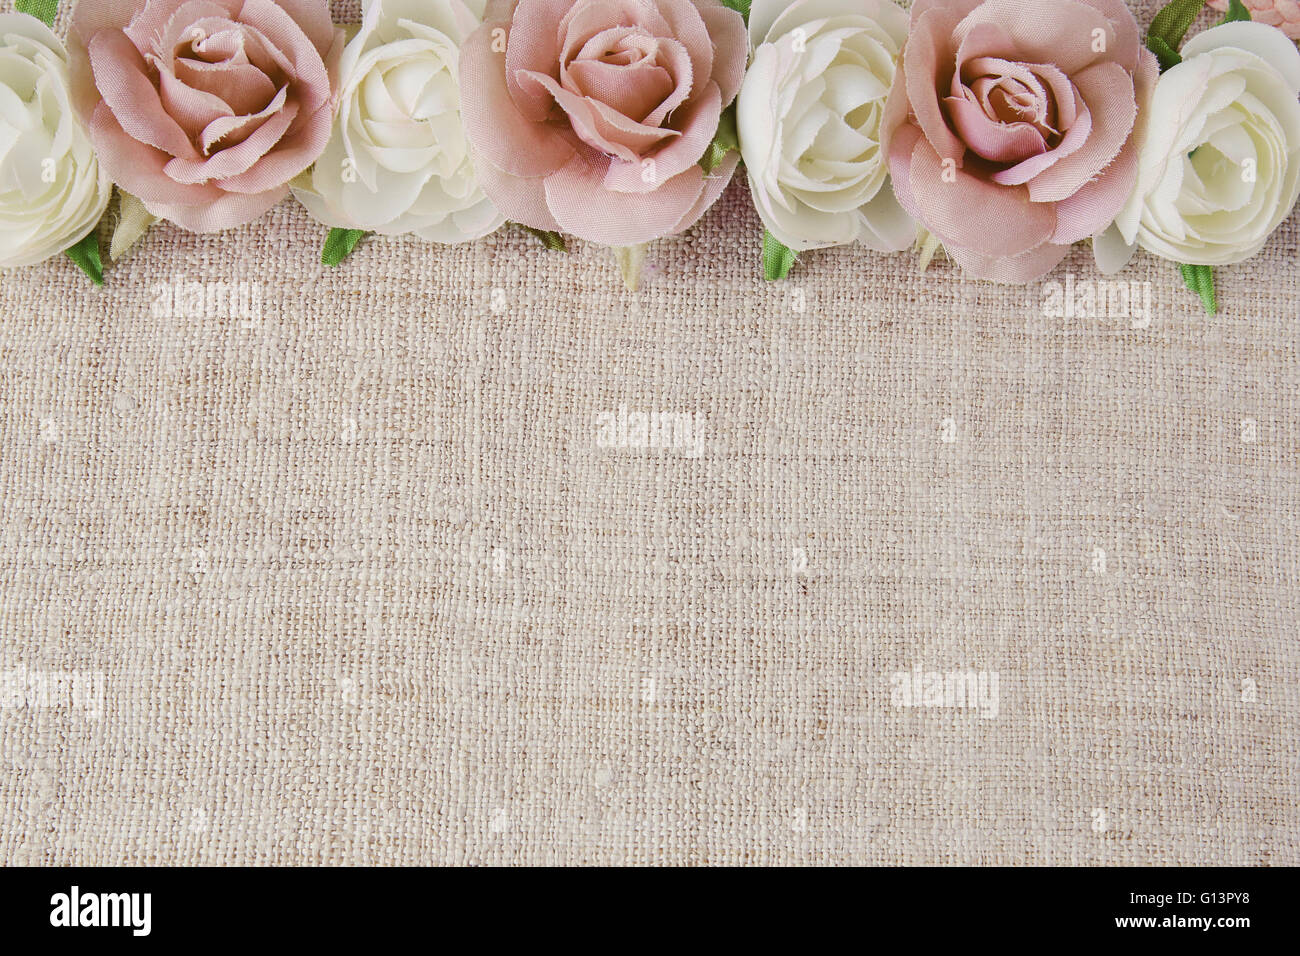 Rosa weiße rose Kunstblumen auf Leinen, Kopie, Raum Hintergrund, Tiefenschärfe, Vintage-Ton Stockfoto